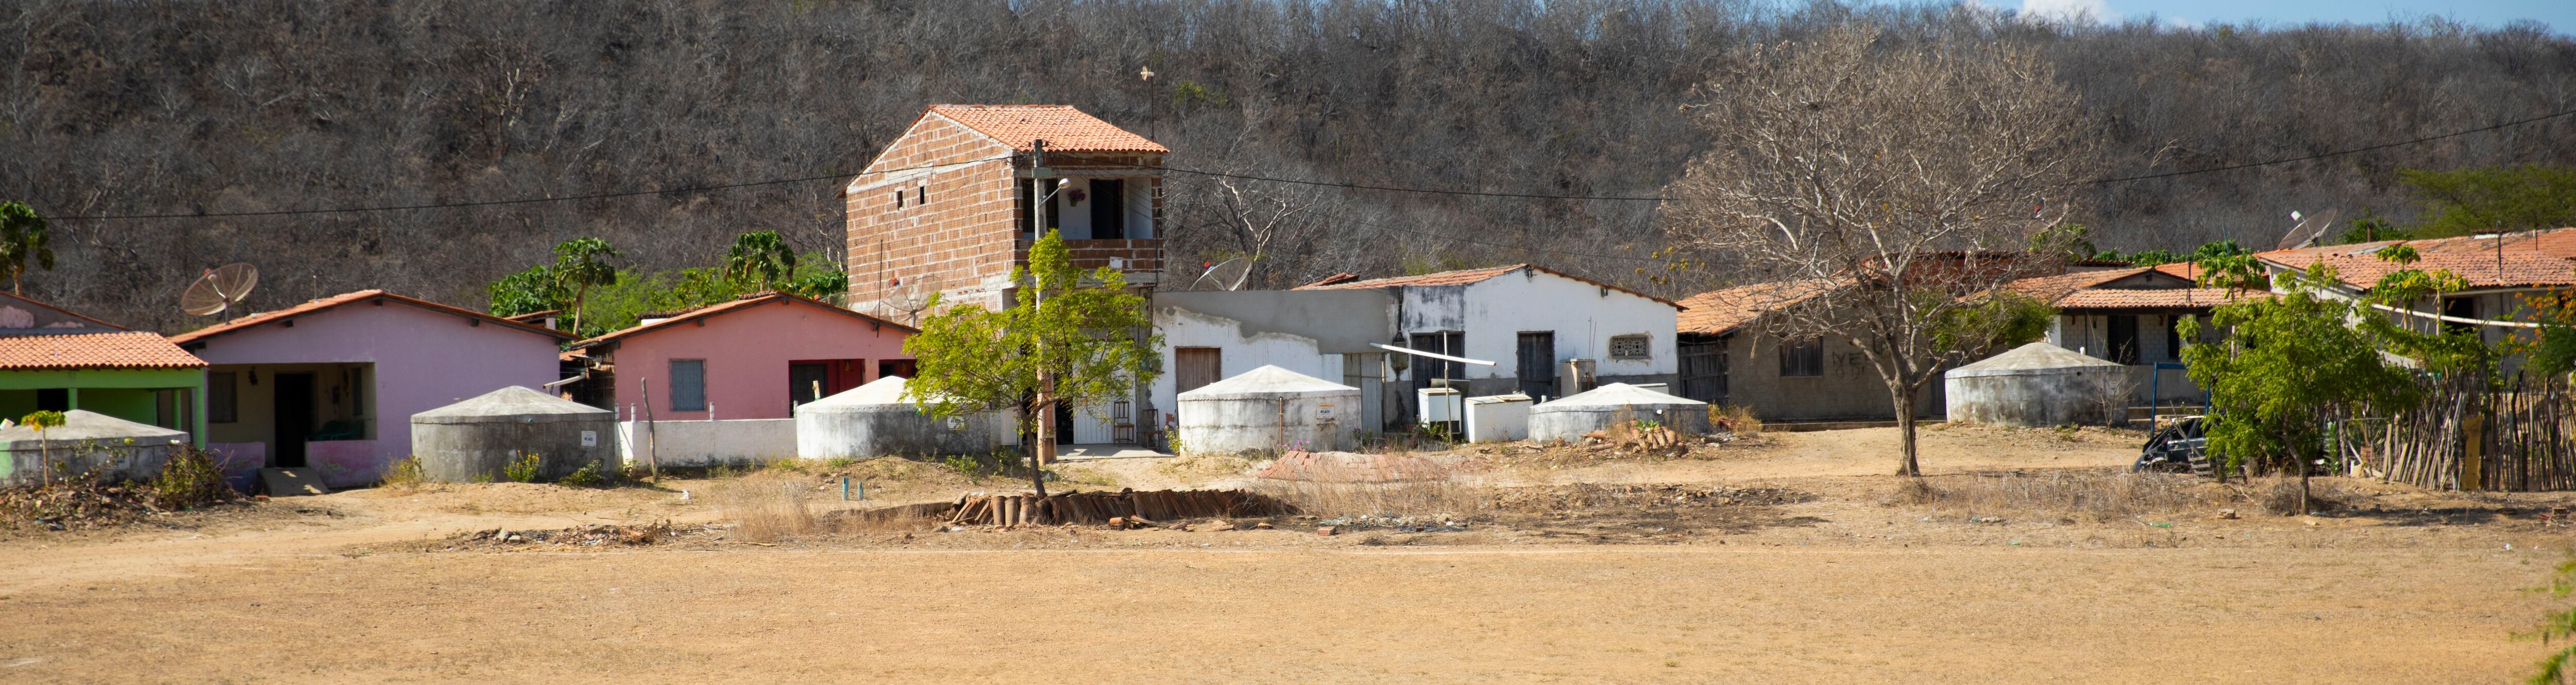 Cisternas em uma comunidade de Senador Pompeu, no Ceará.